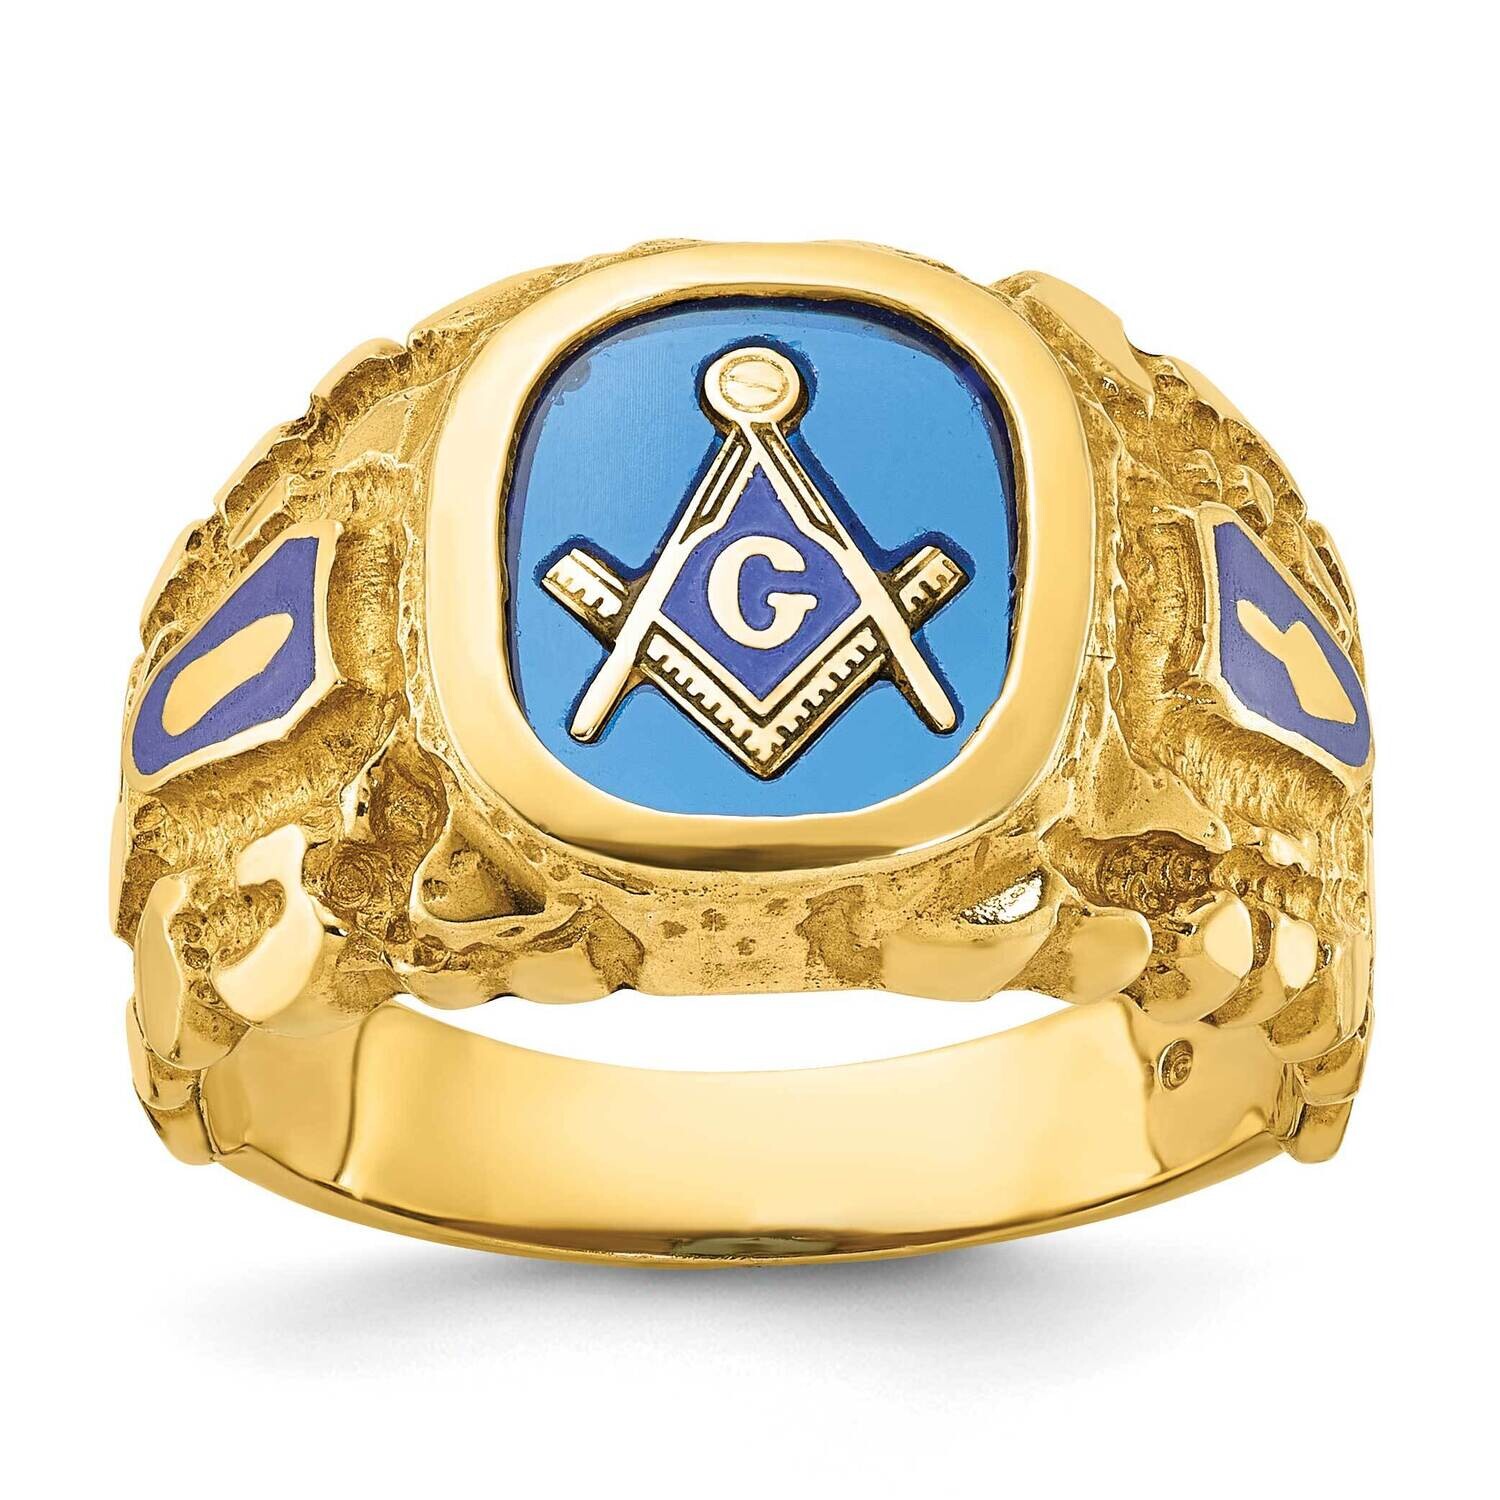 Ibgoodman Men's Polished Nugget Textured Blue Lodge Master Masonic Ring Mounting 14k Gold B57619-4Y